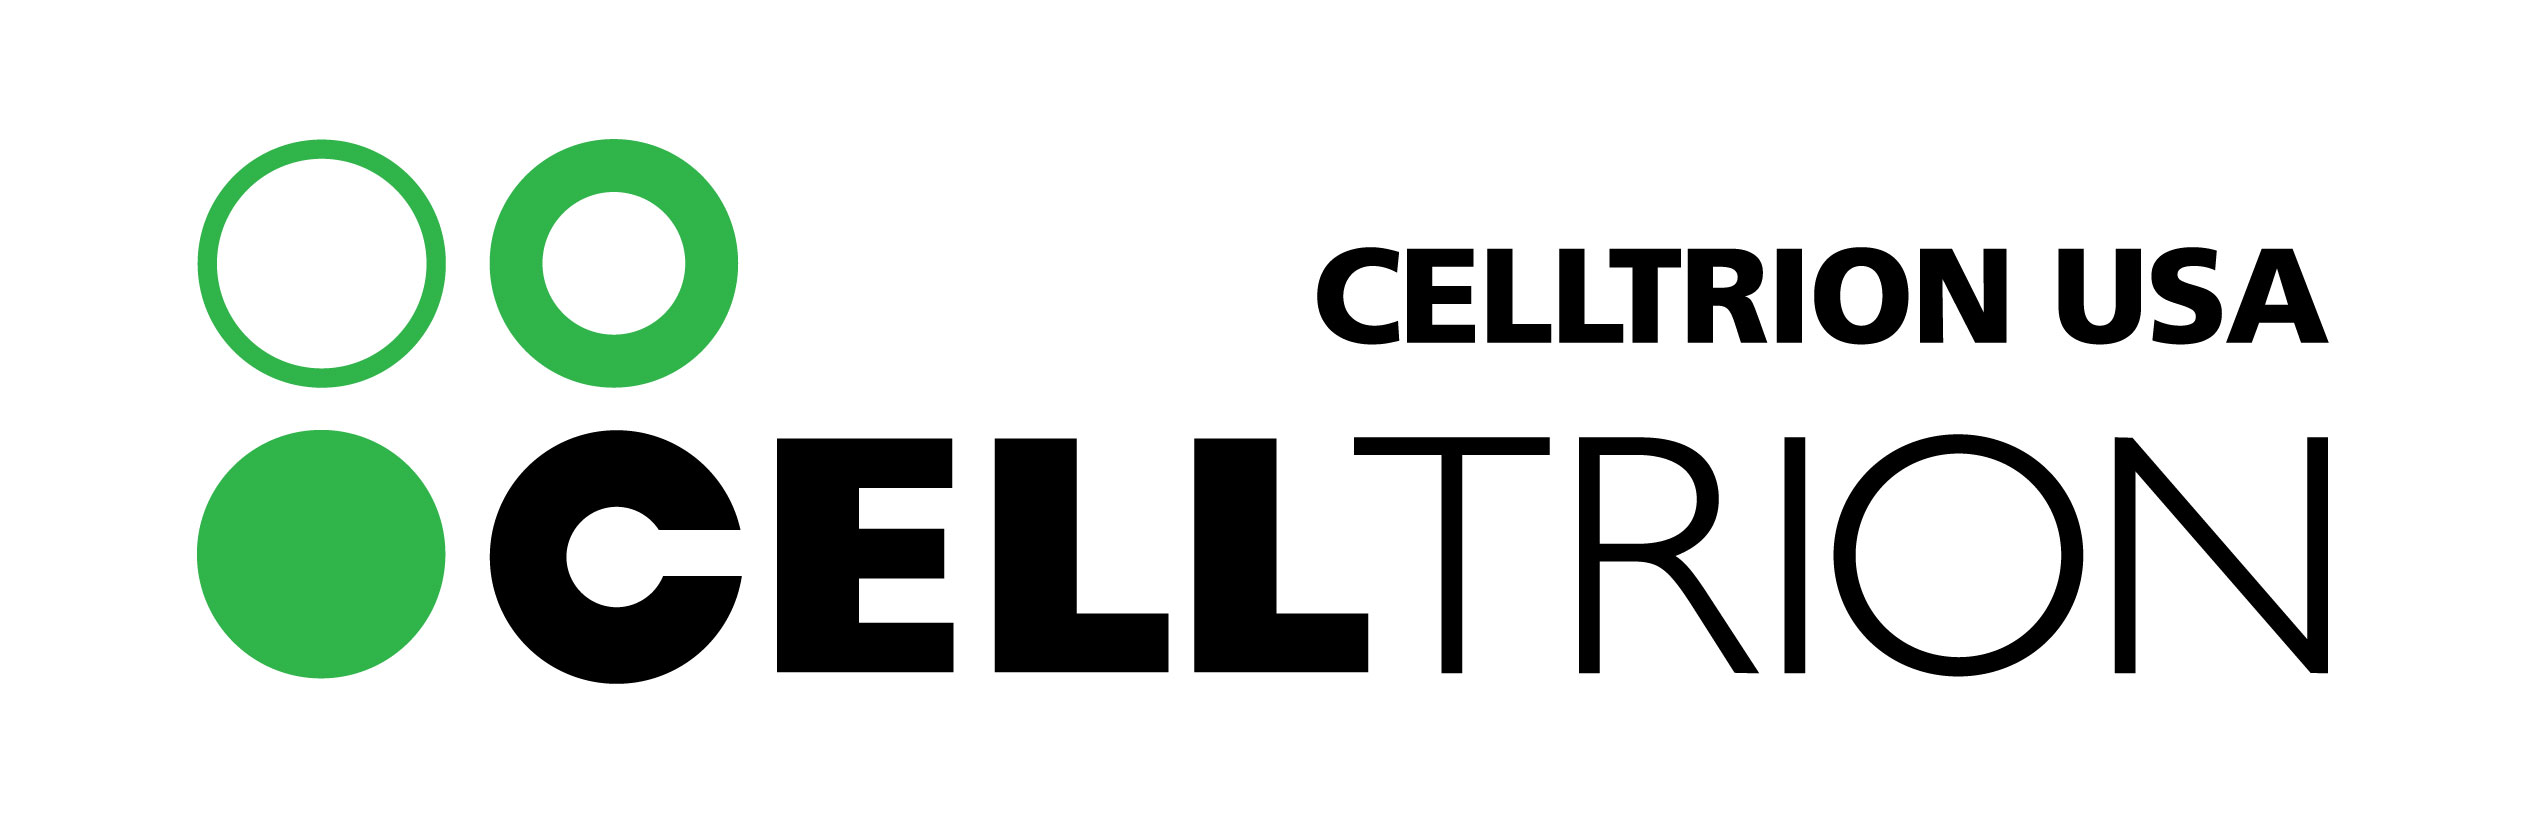 Celltrion logo